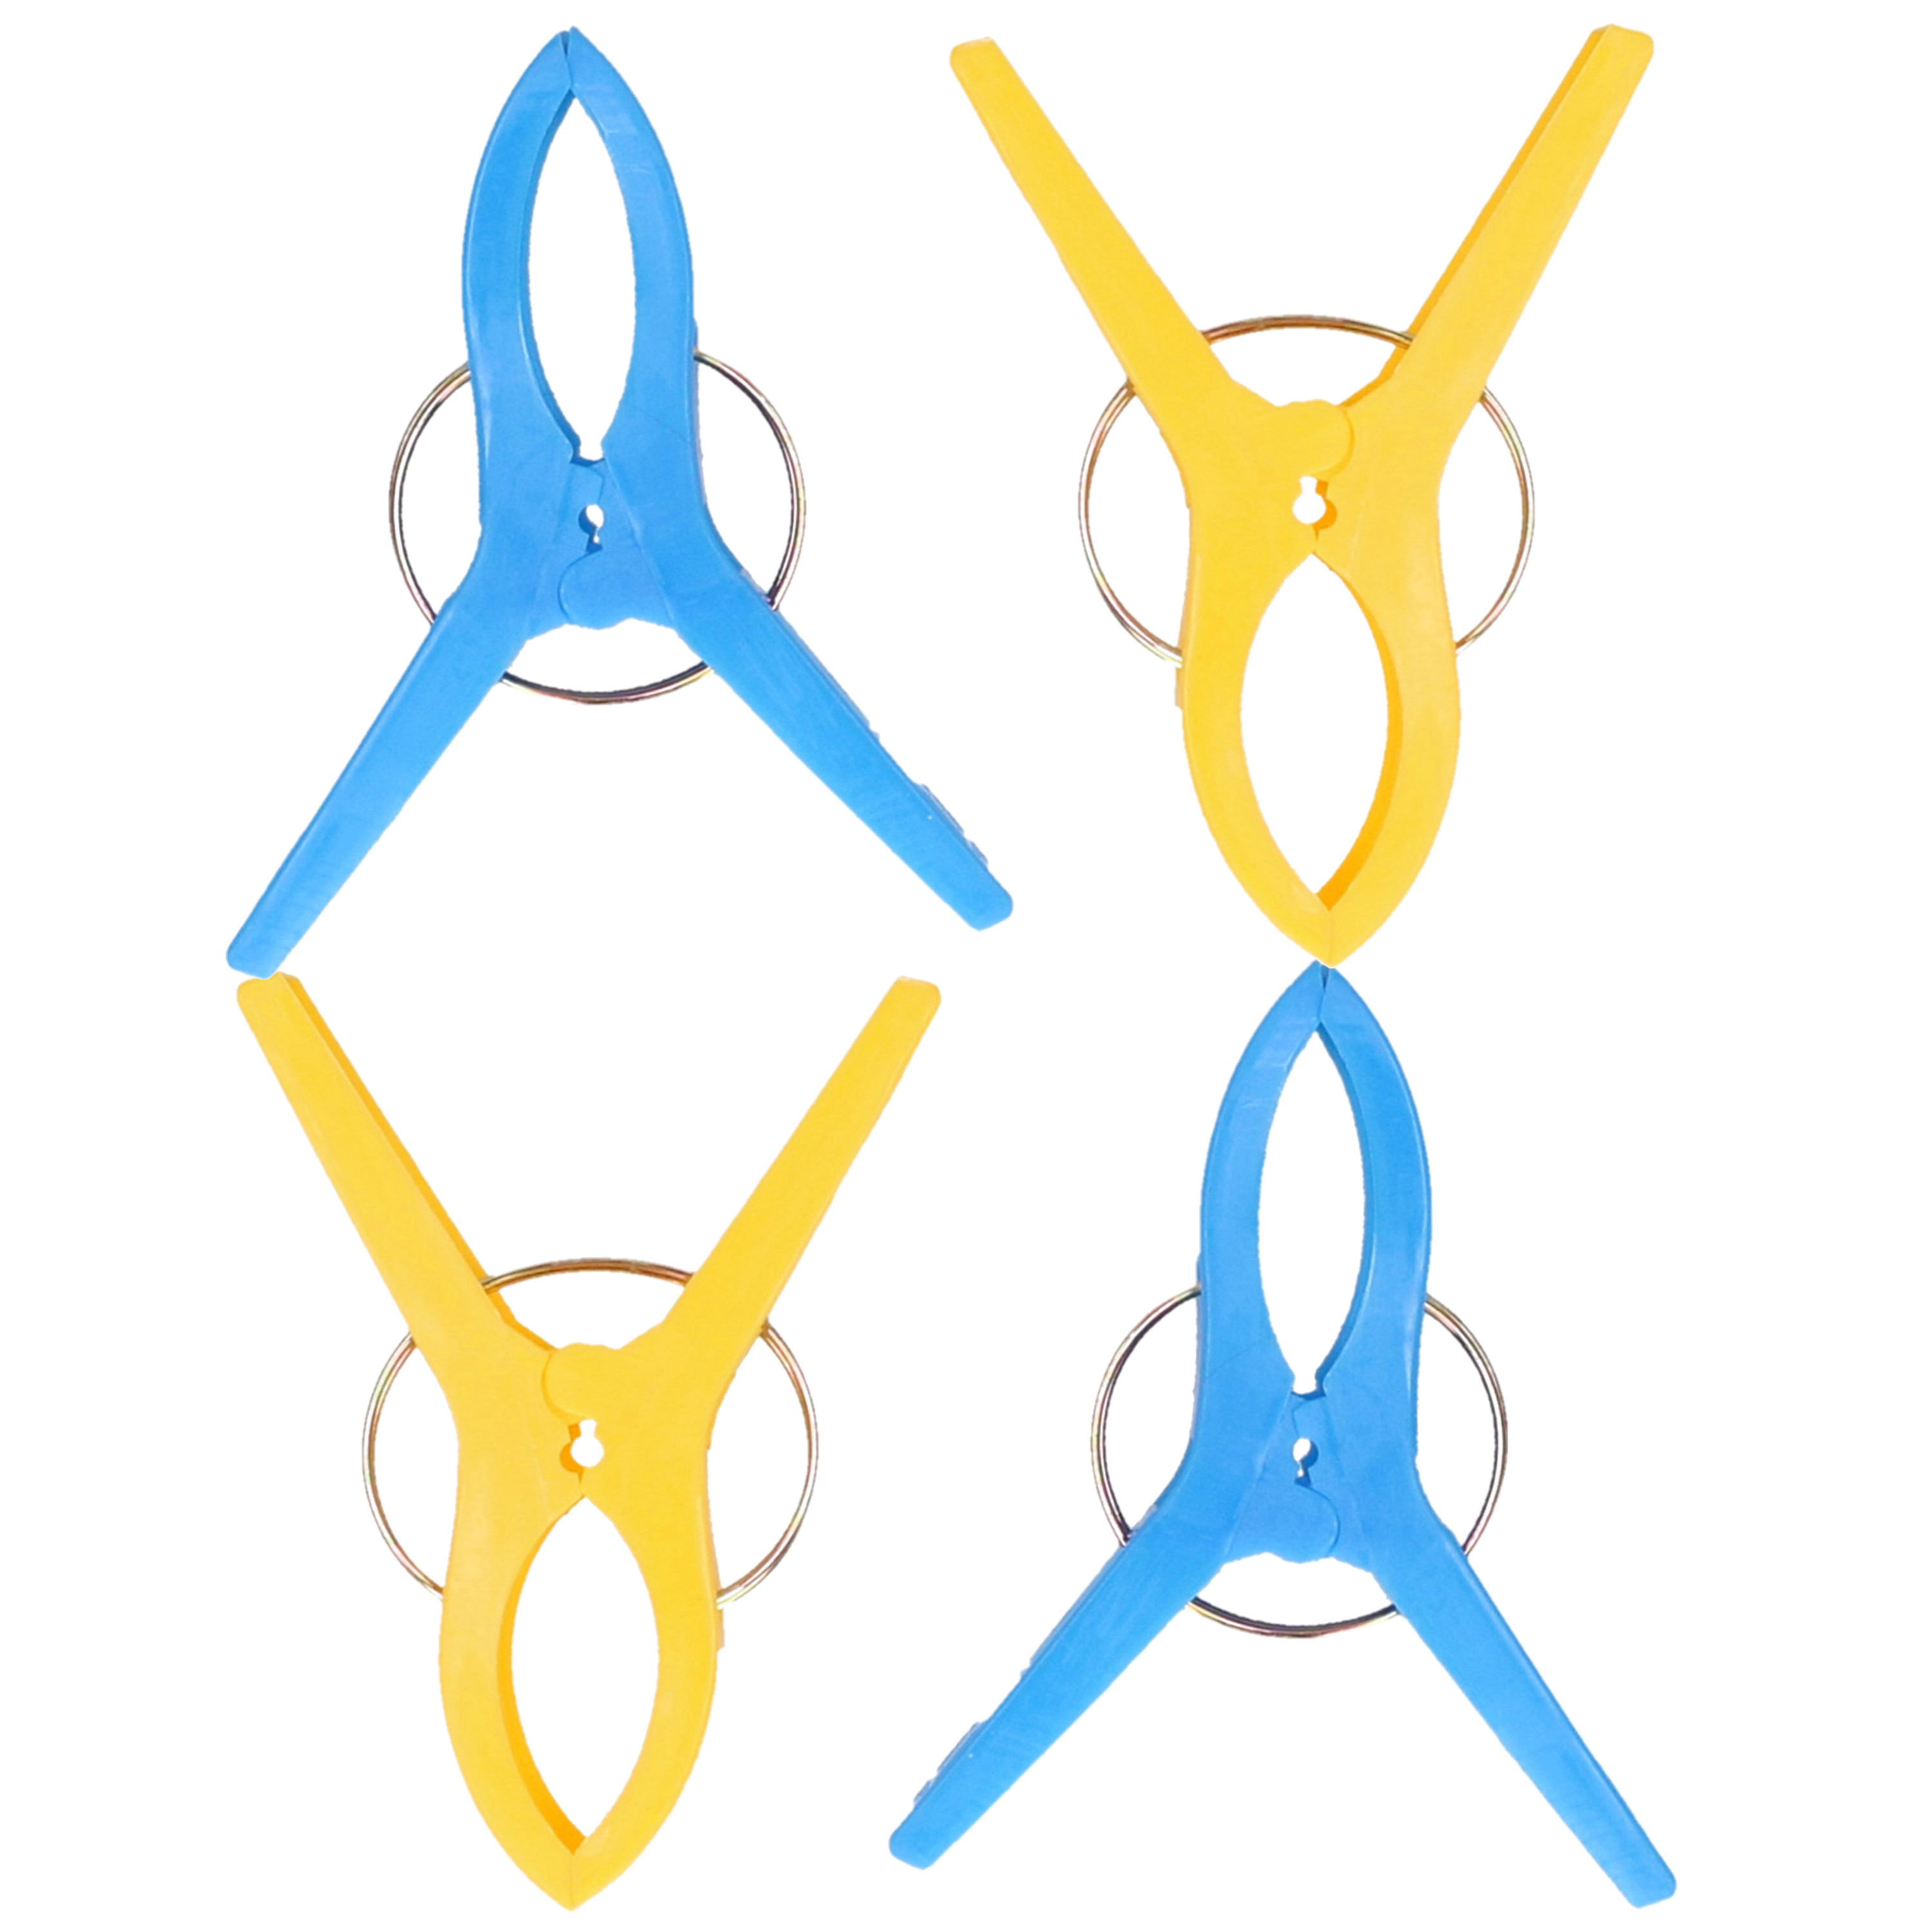 Handdoekknijpers XL 4x blauw-geel kunststof 12 cm wasknijpers